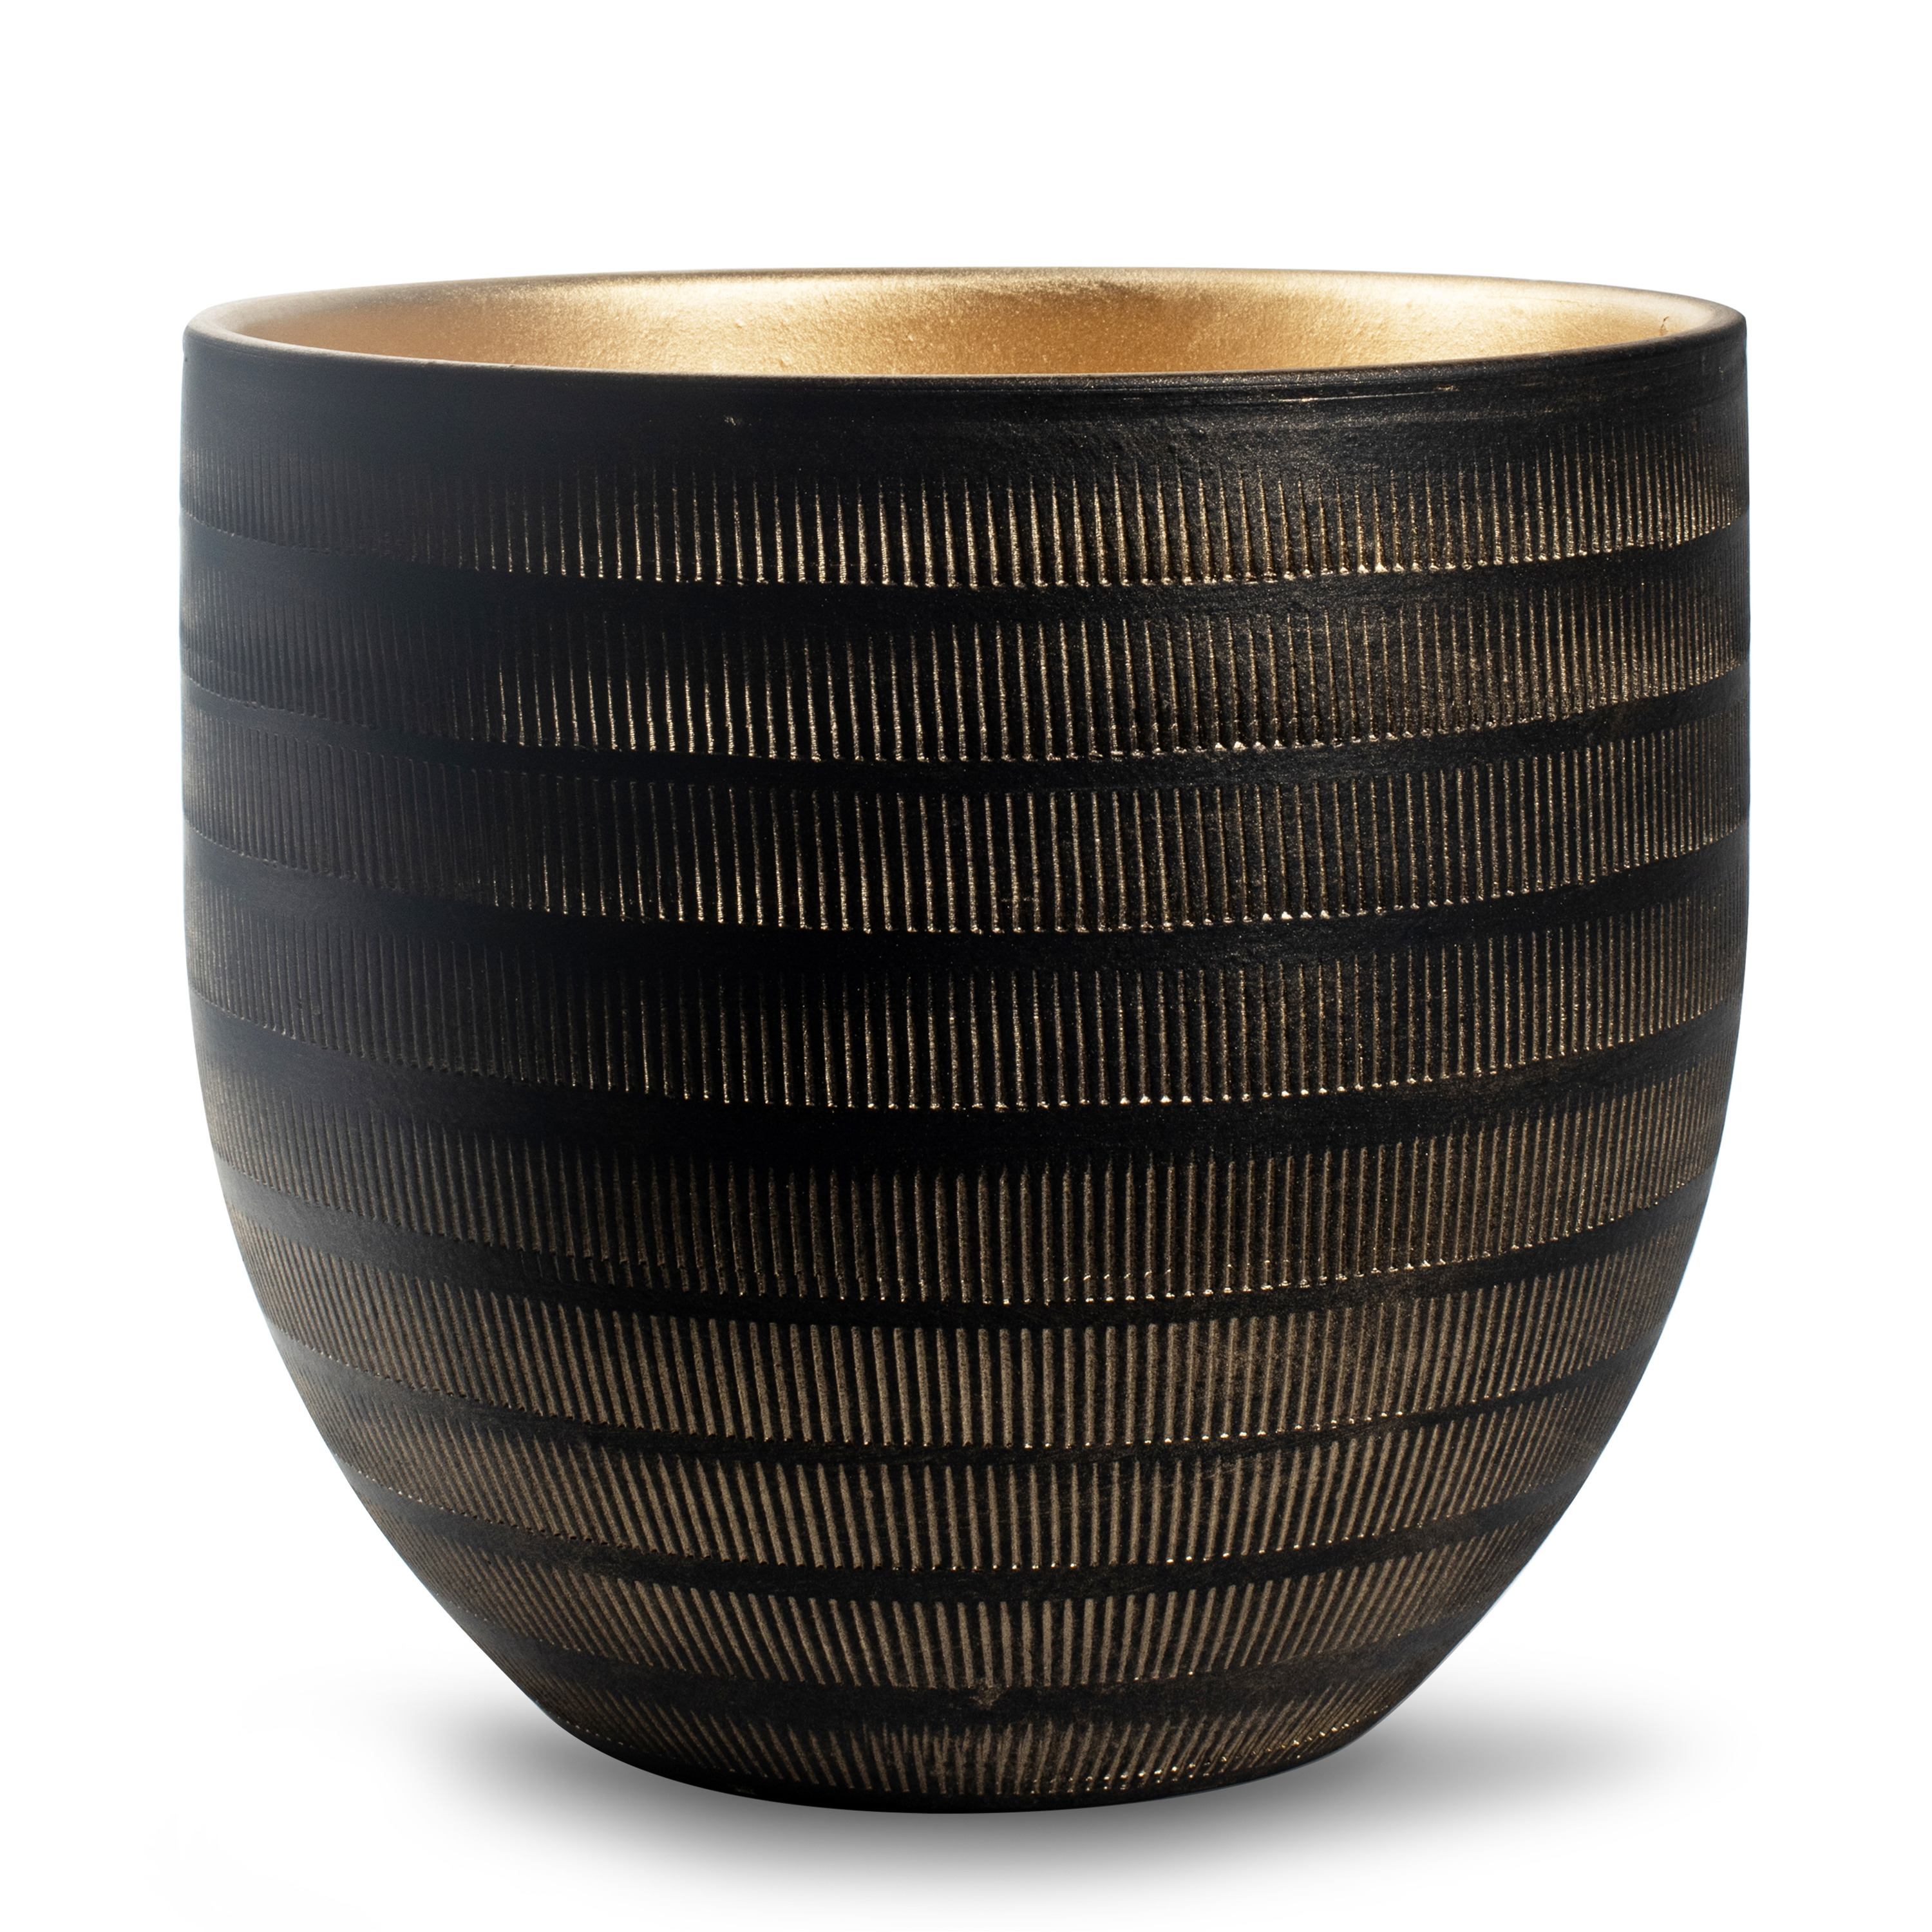 Jodeco Plantenpot/bloempot Beau - zwart/goud - keramiek - D29 x H26 cm -